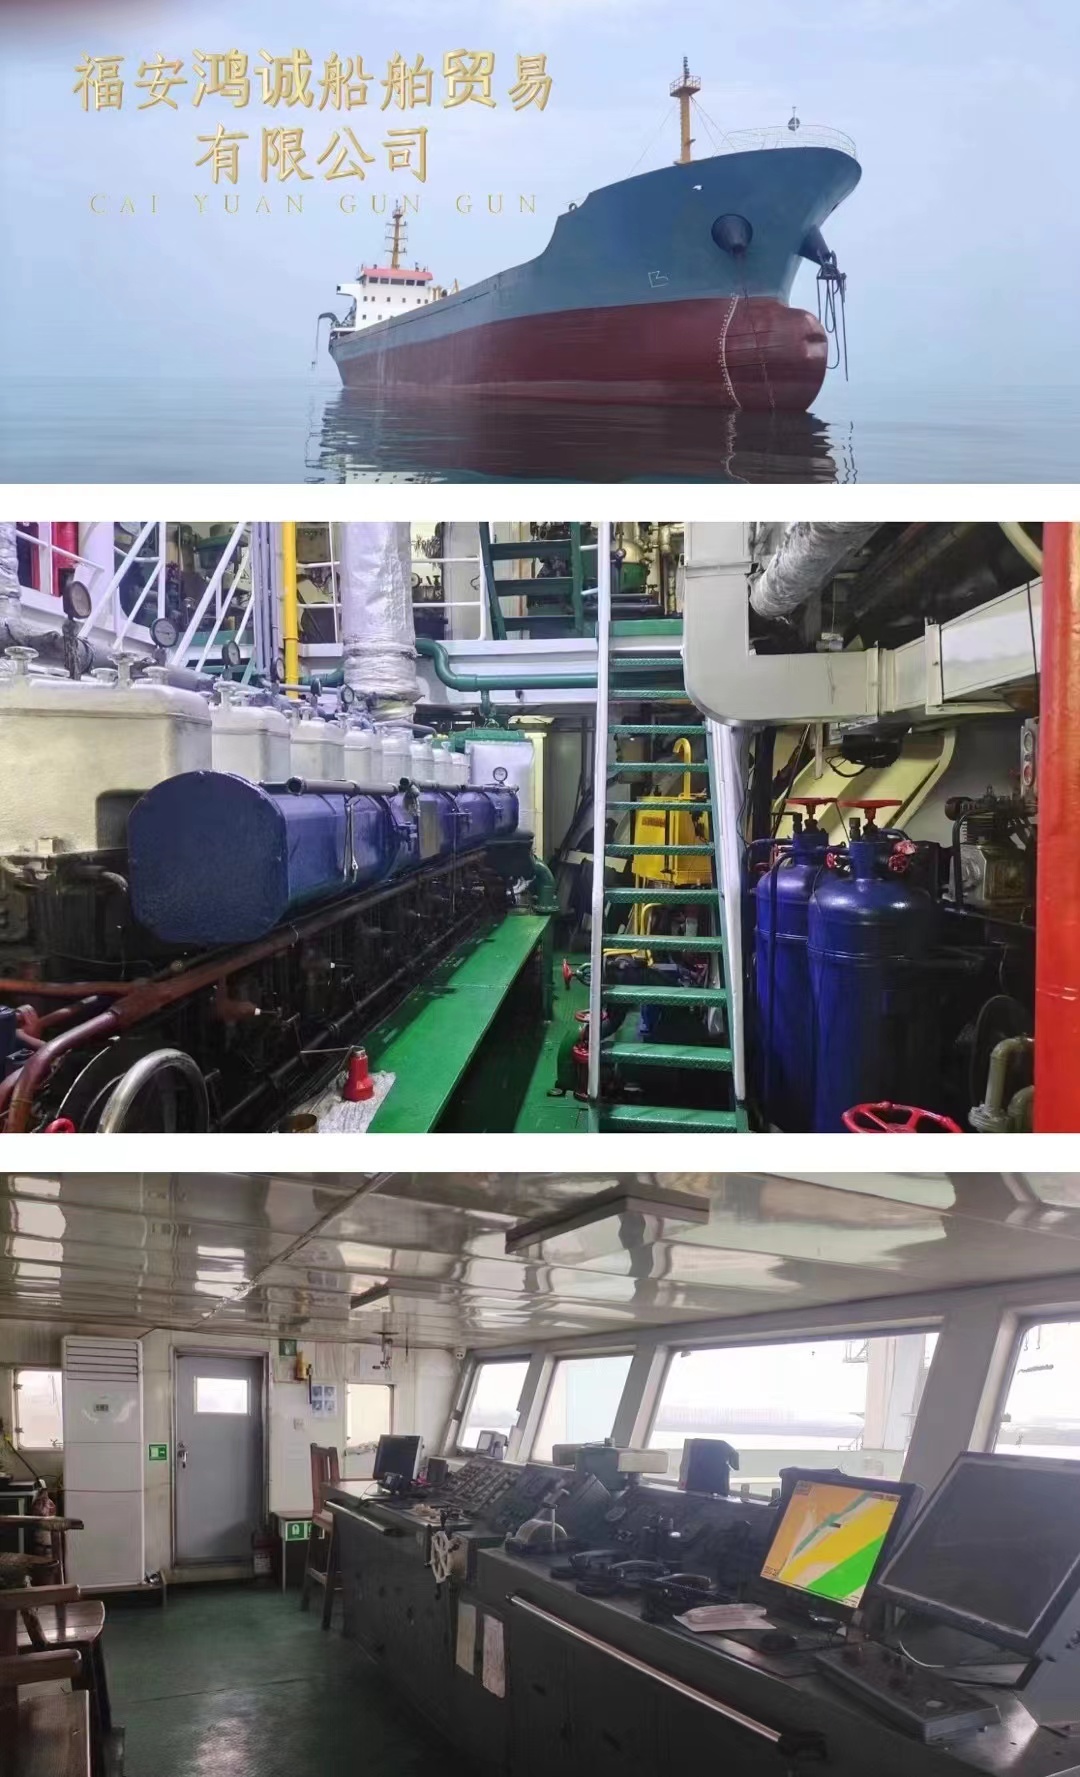 低价/低价出售5030吨散货船 去年已经上排特检保养好 2008年台州国营海东船厂建造/